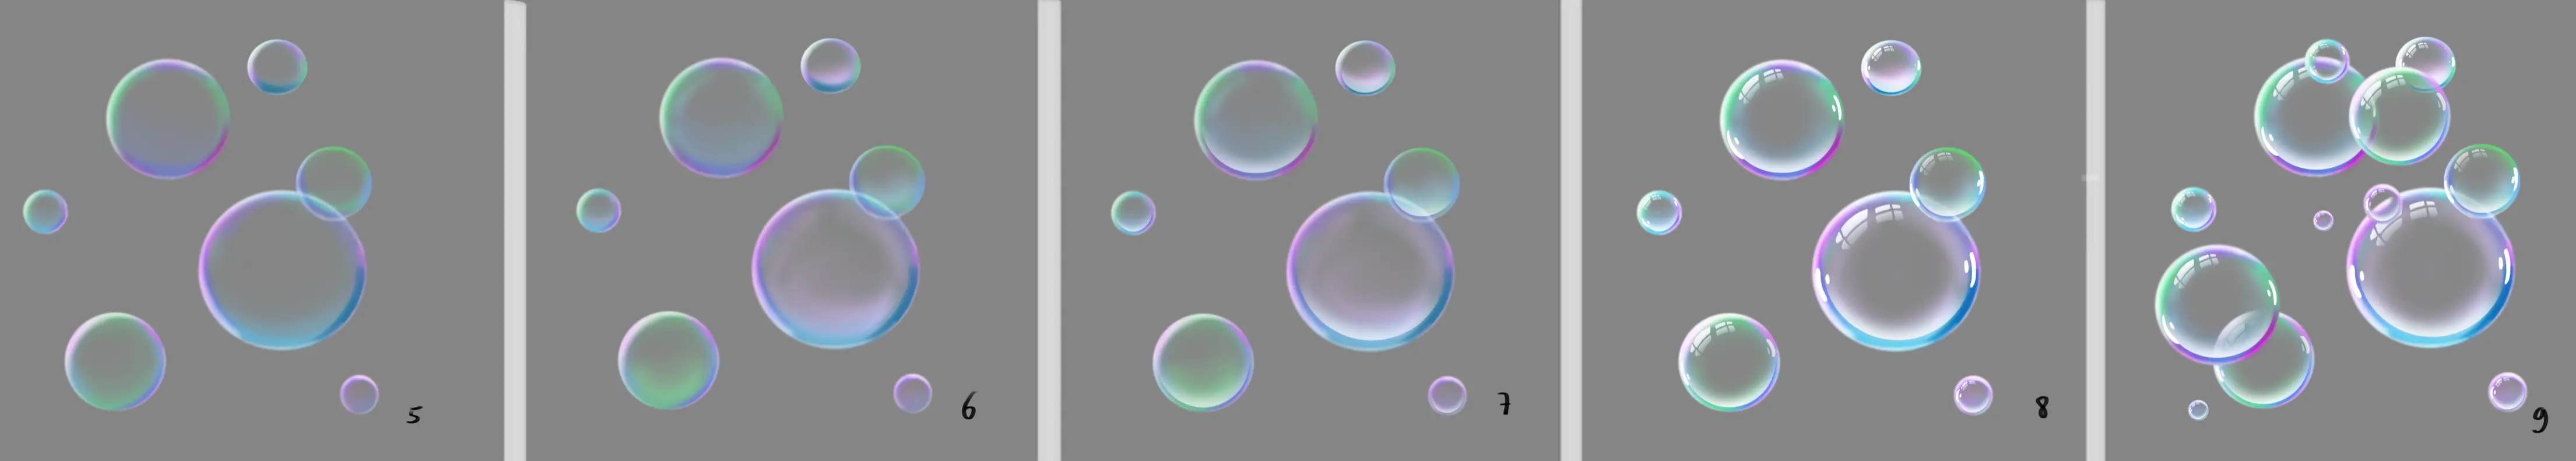 dessin de bulles transparentes